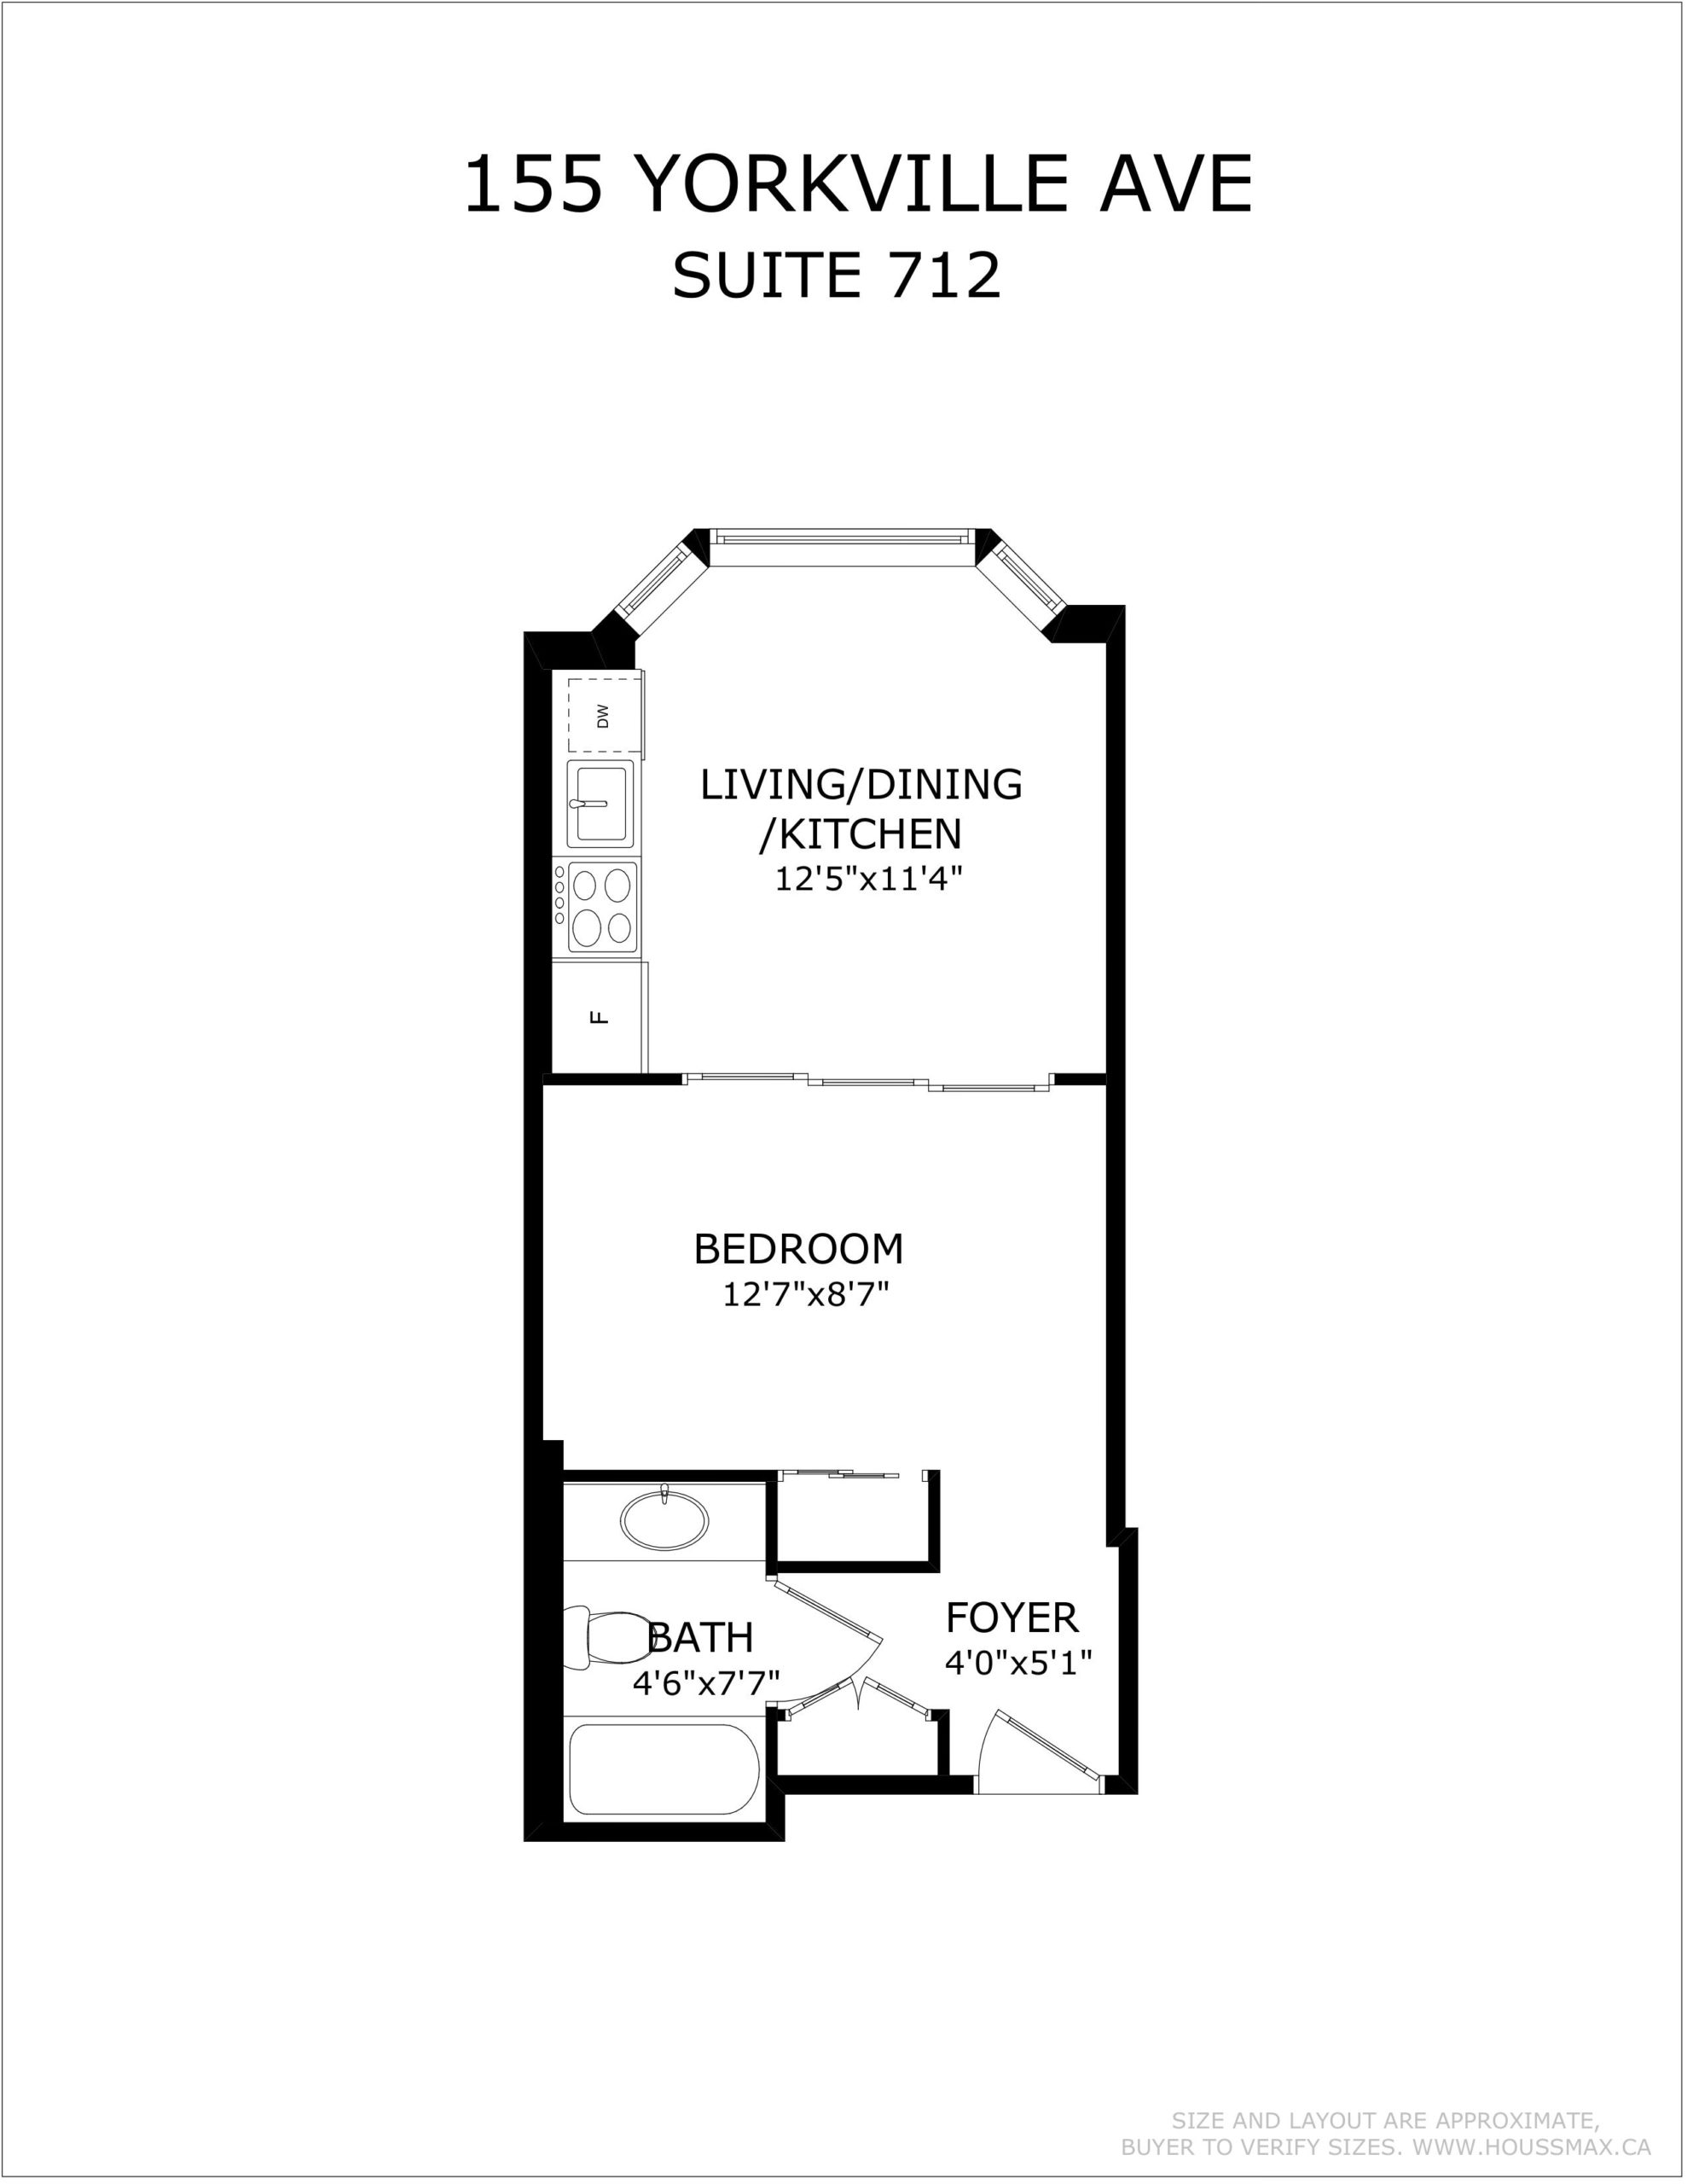 Floor plans for 155 Yorkville Ave Unit 712